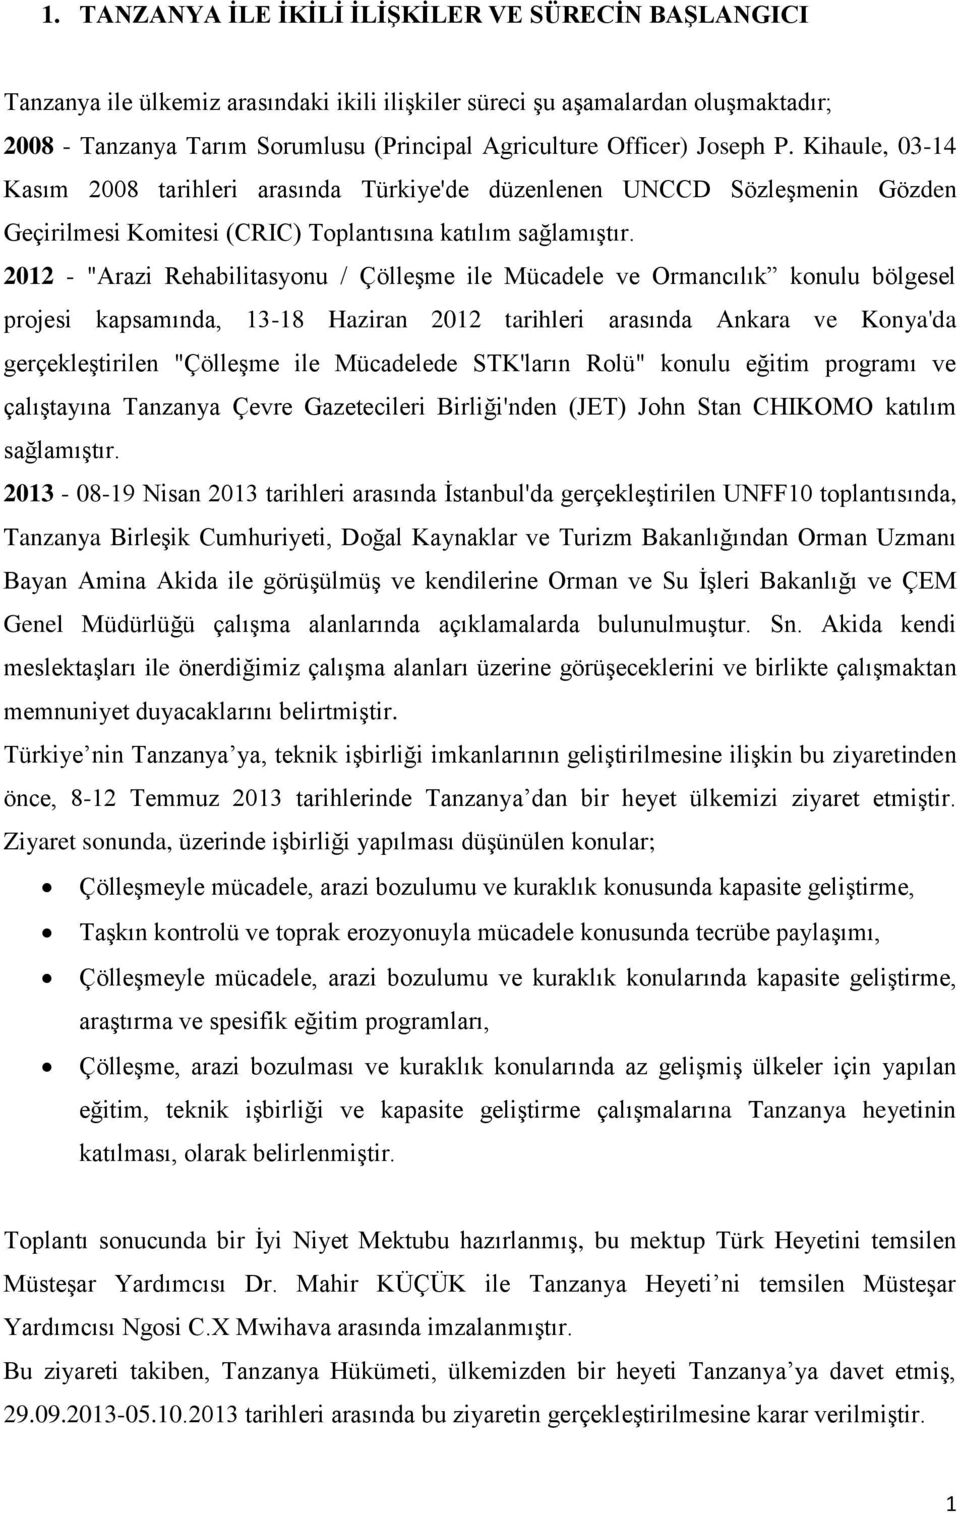 2012 - "Arazi Rehabilitasyonu / ÇölleĢme ile Mücadele ve Ormancılık konulu bölgesel projesi kapsamında, 13-18 Haziran 2012 tarihleri arasında Ankara ve Konya'da gerçekleģtirilen "ÇölleĢme ile